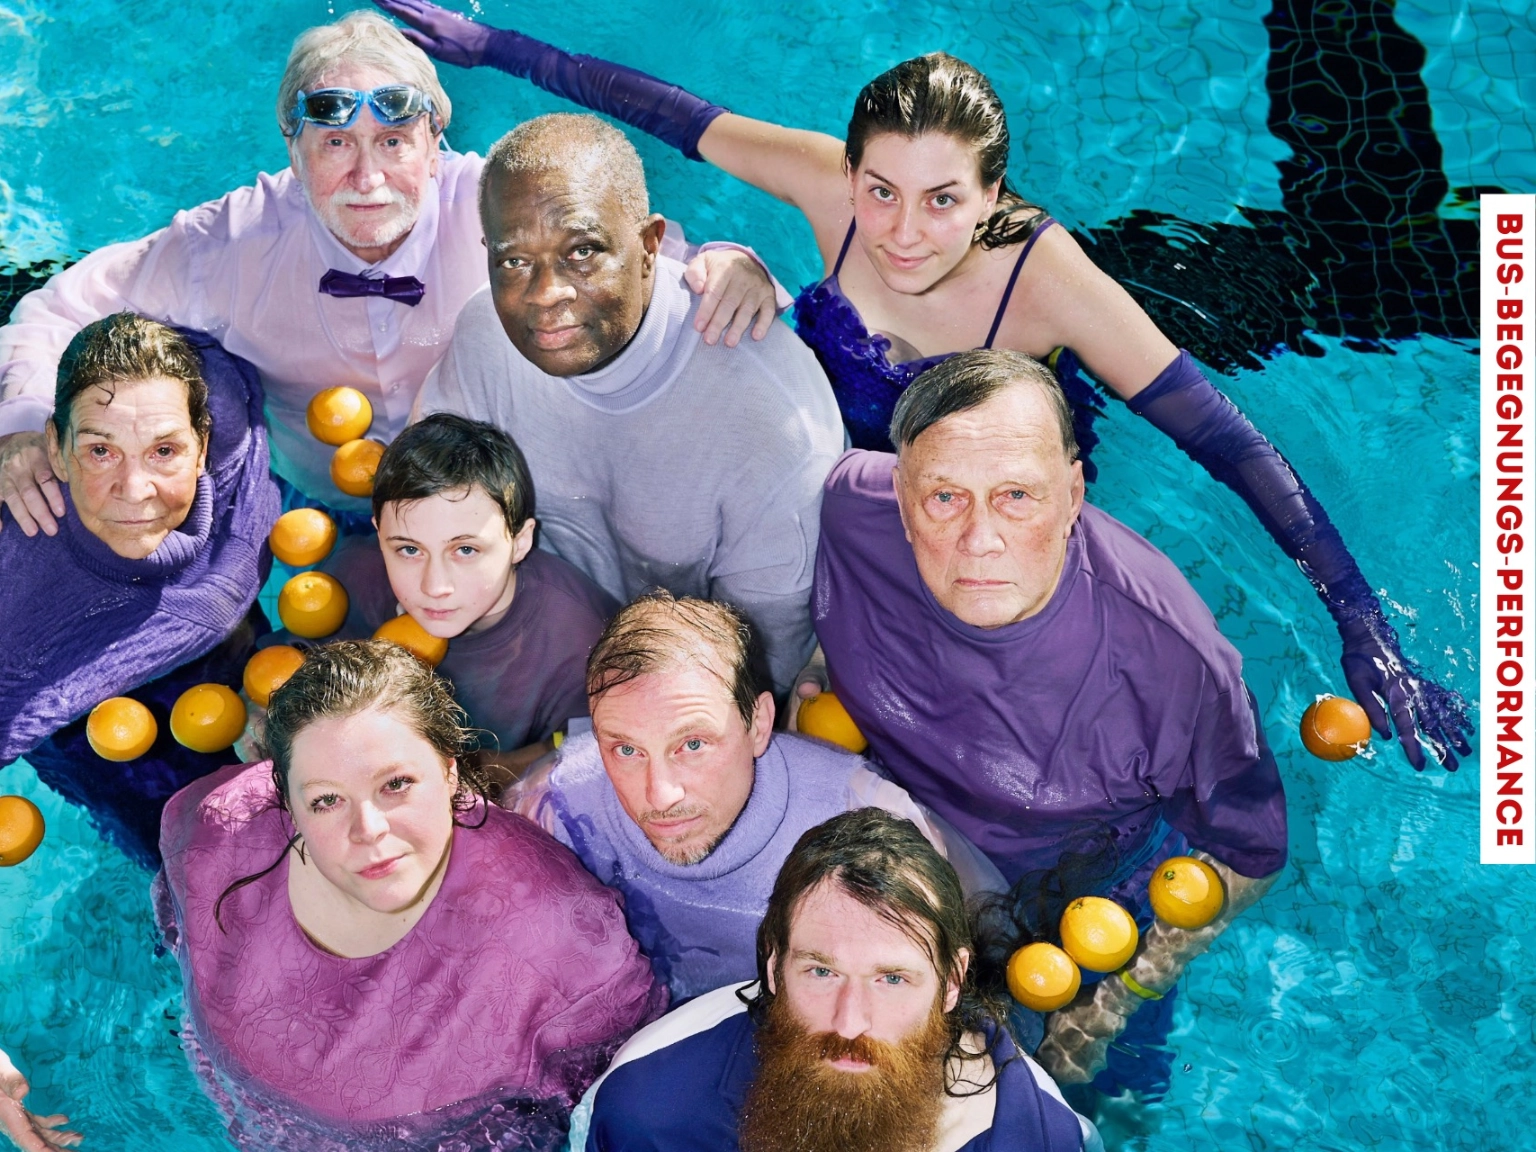 Neun Menschen stehen in Lilafarbenen Outfits in einem Schwimmbecken. Das Foto wird von oben gemacht